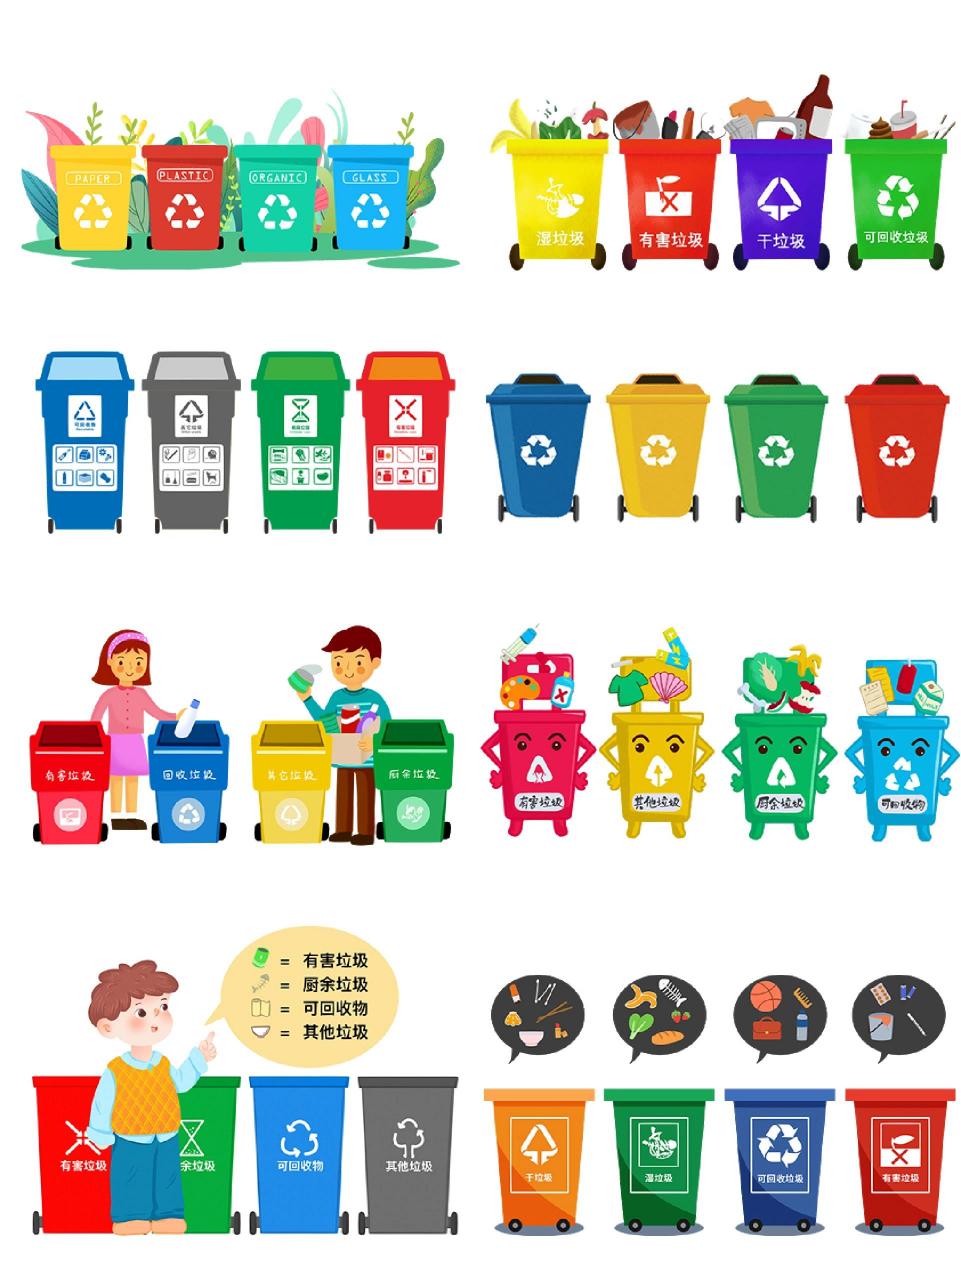 98垃圾分类垃圾桶颜色一般可分为绿色,红色,蓝色